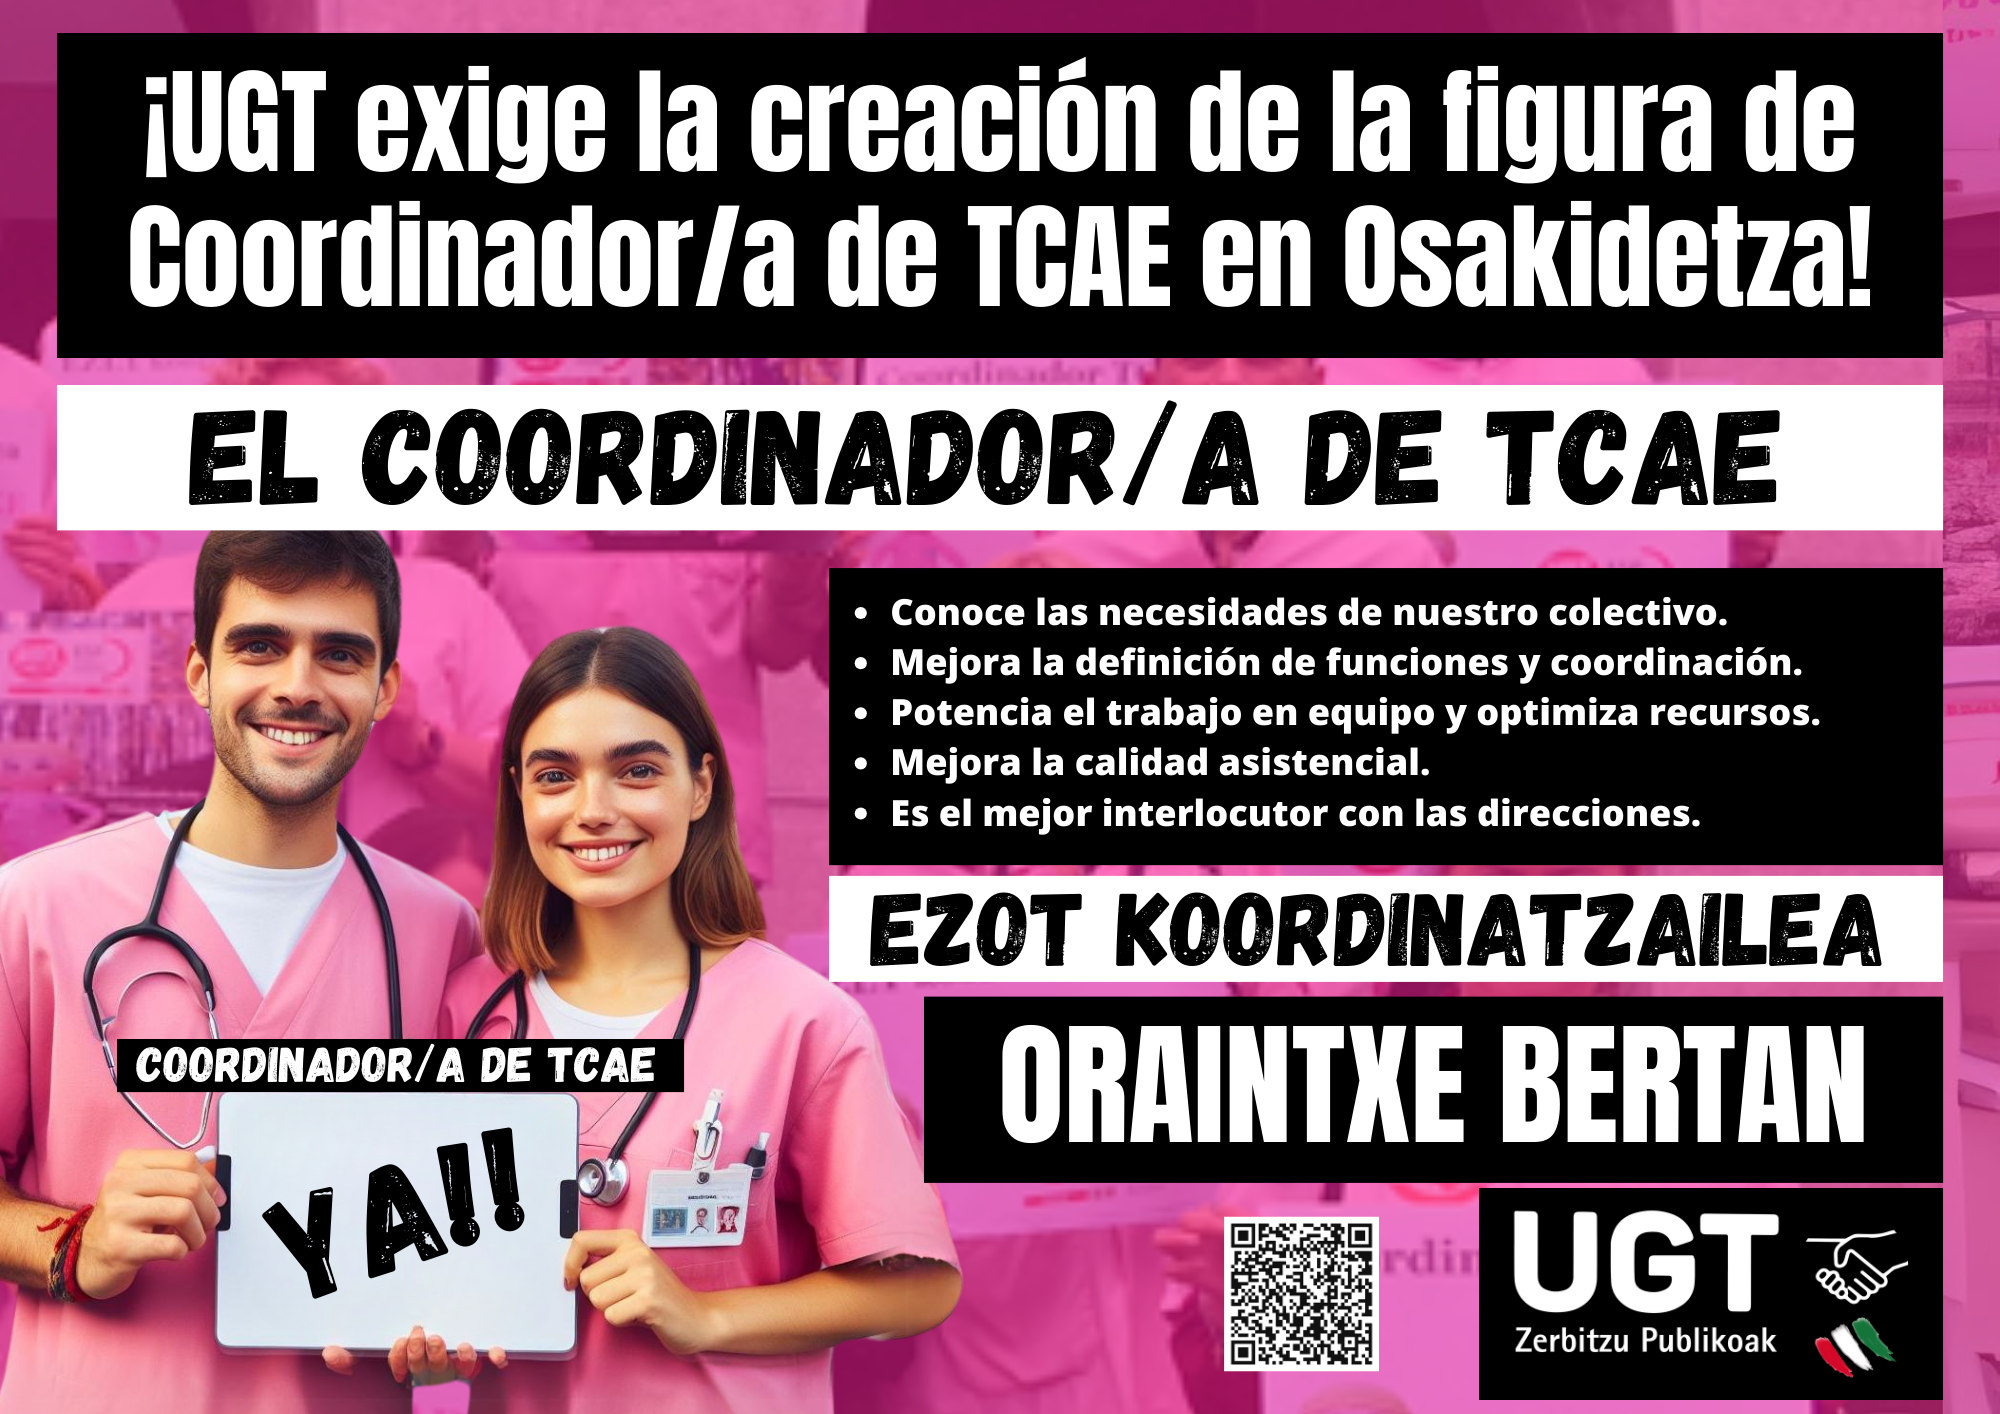 ¡UGT exige la creación de la figura de Coordinador/a de TCAE en Osakidetza!